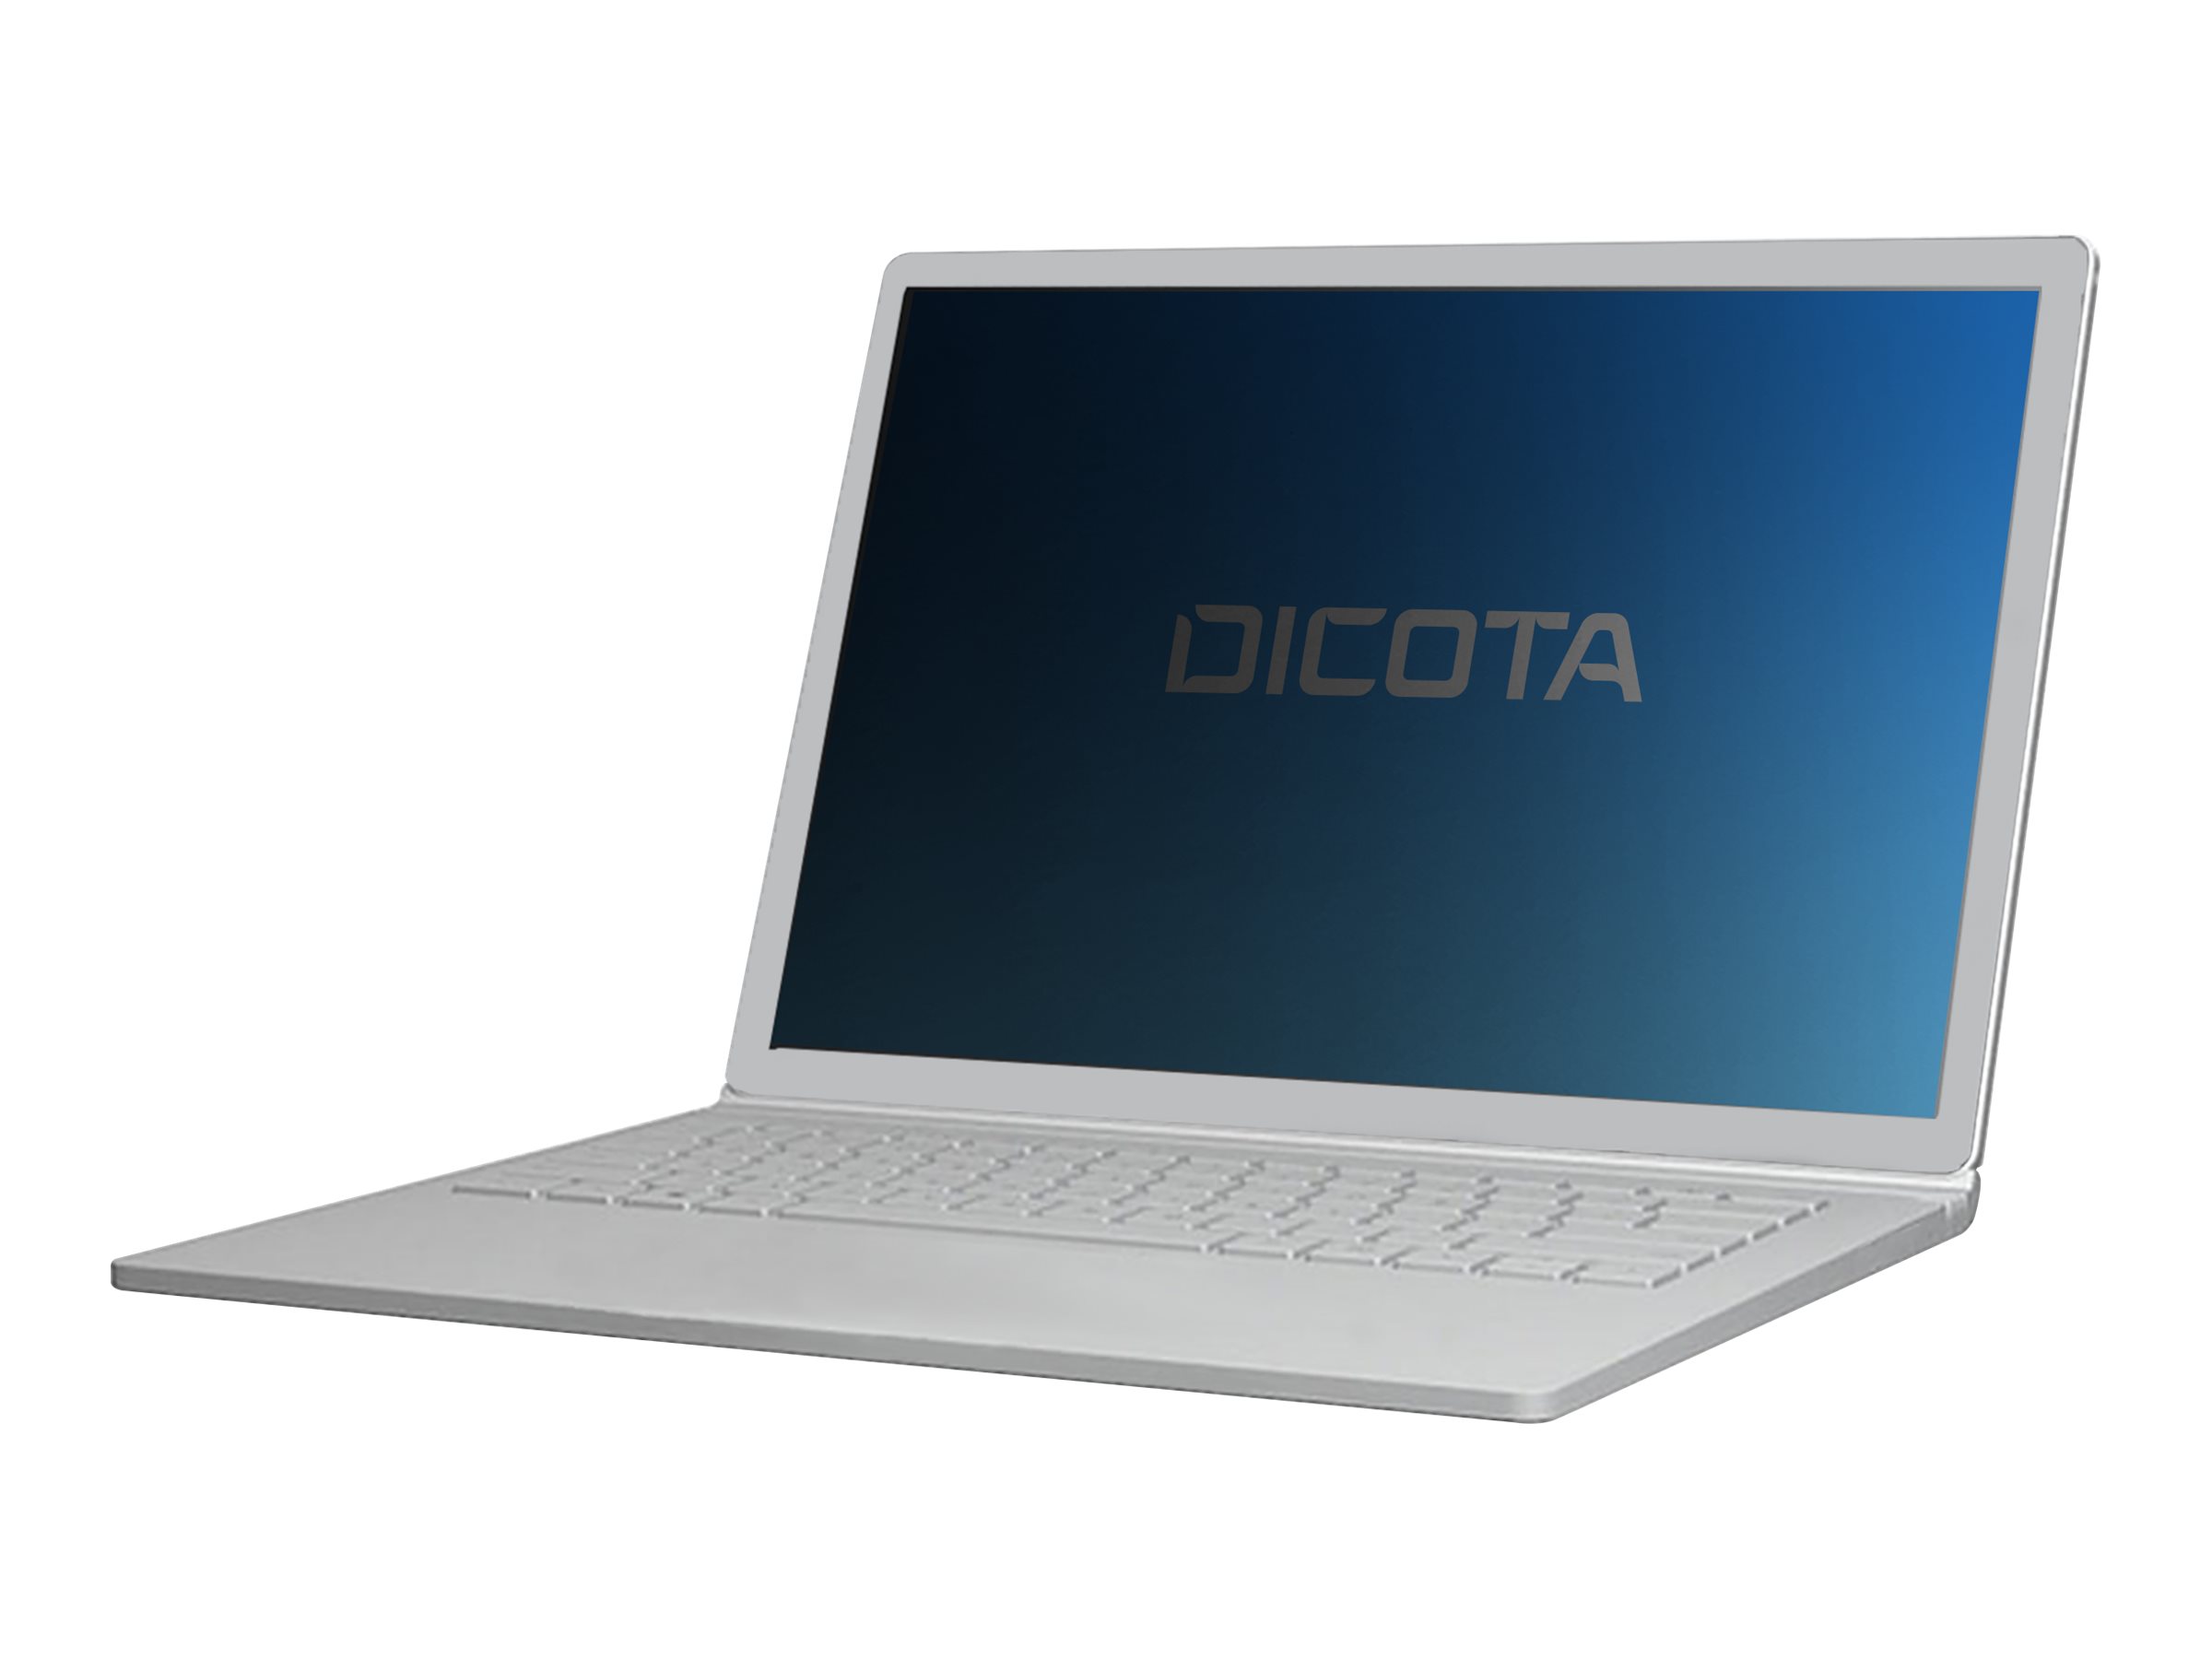 DICOTA - Filtre de confidentialité pour ordinateur portable - 4 voies - amovible - branchement - noir - pour Dell Latitude 5300 2-in-1 - D70198 - Accessoires pour écran